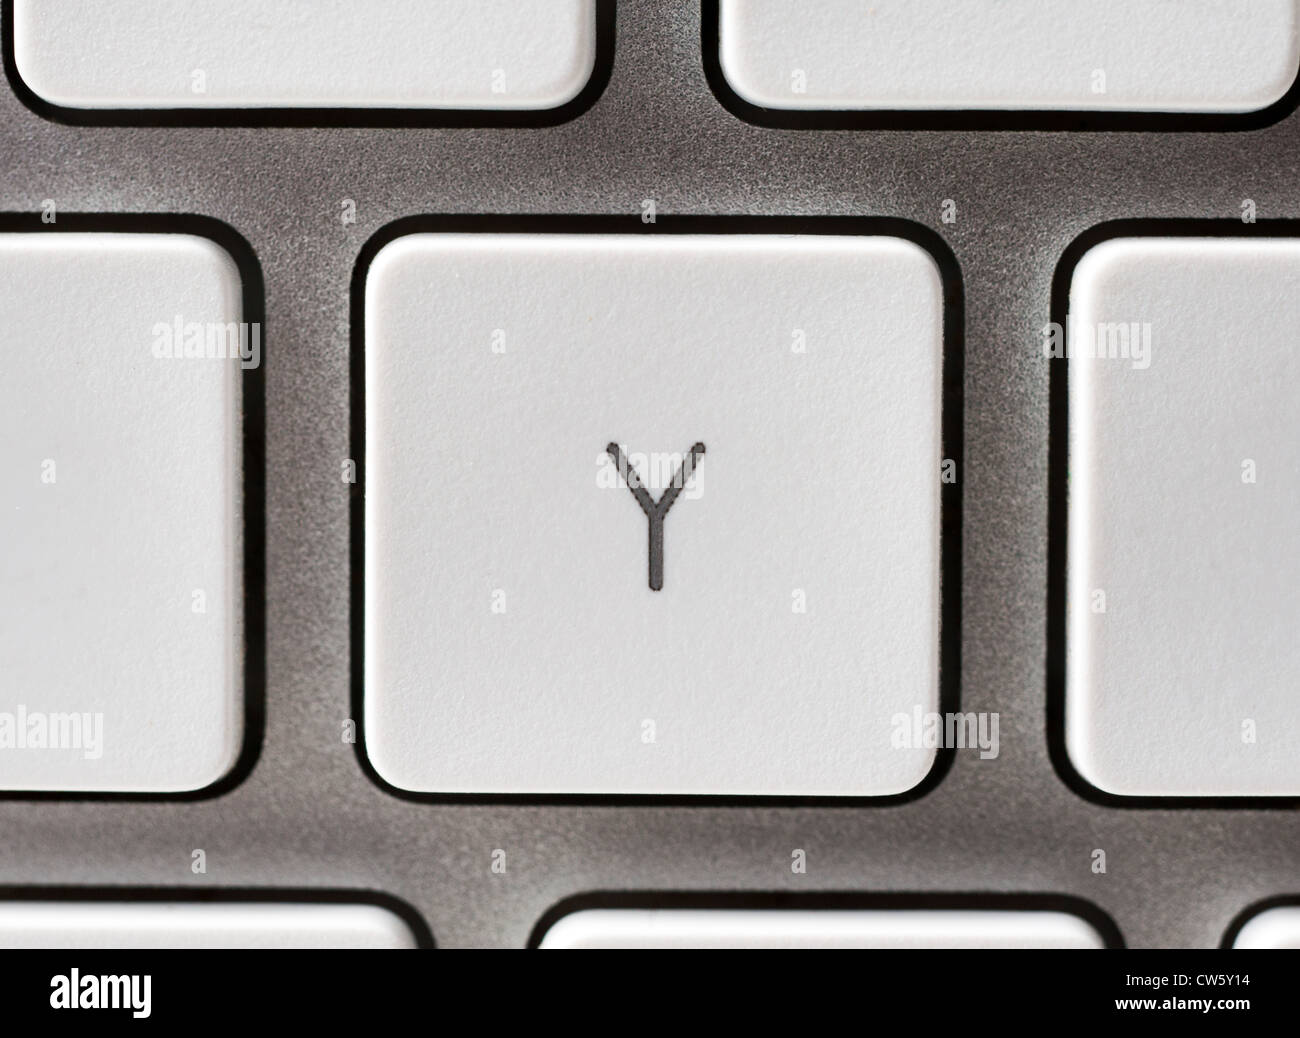 Buchstabe Y auf eine Apple-Tastatur Stockfoto